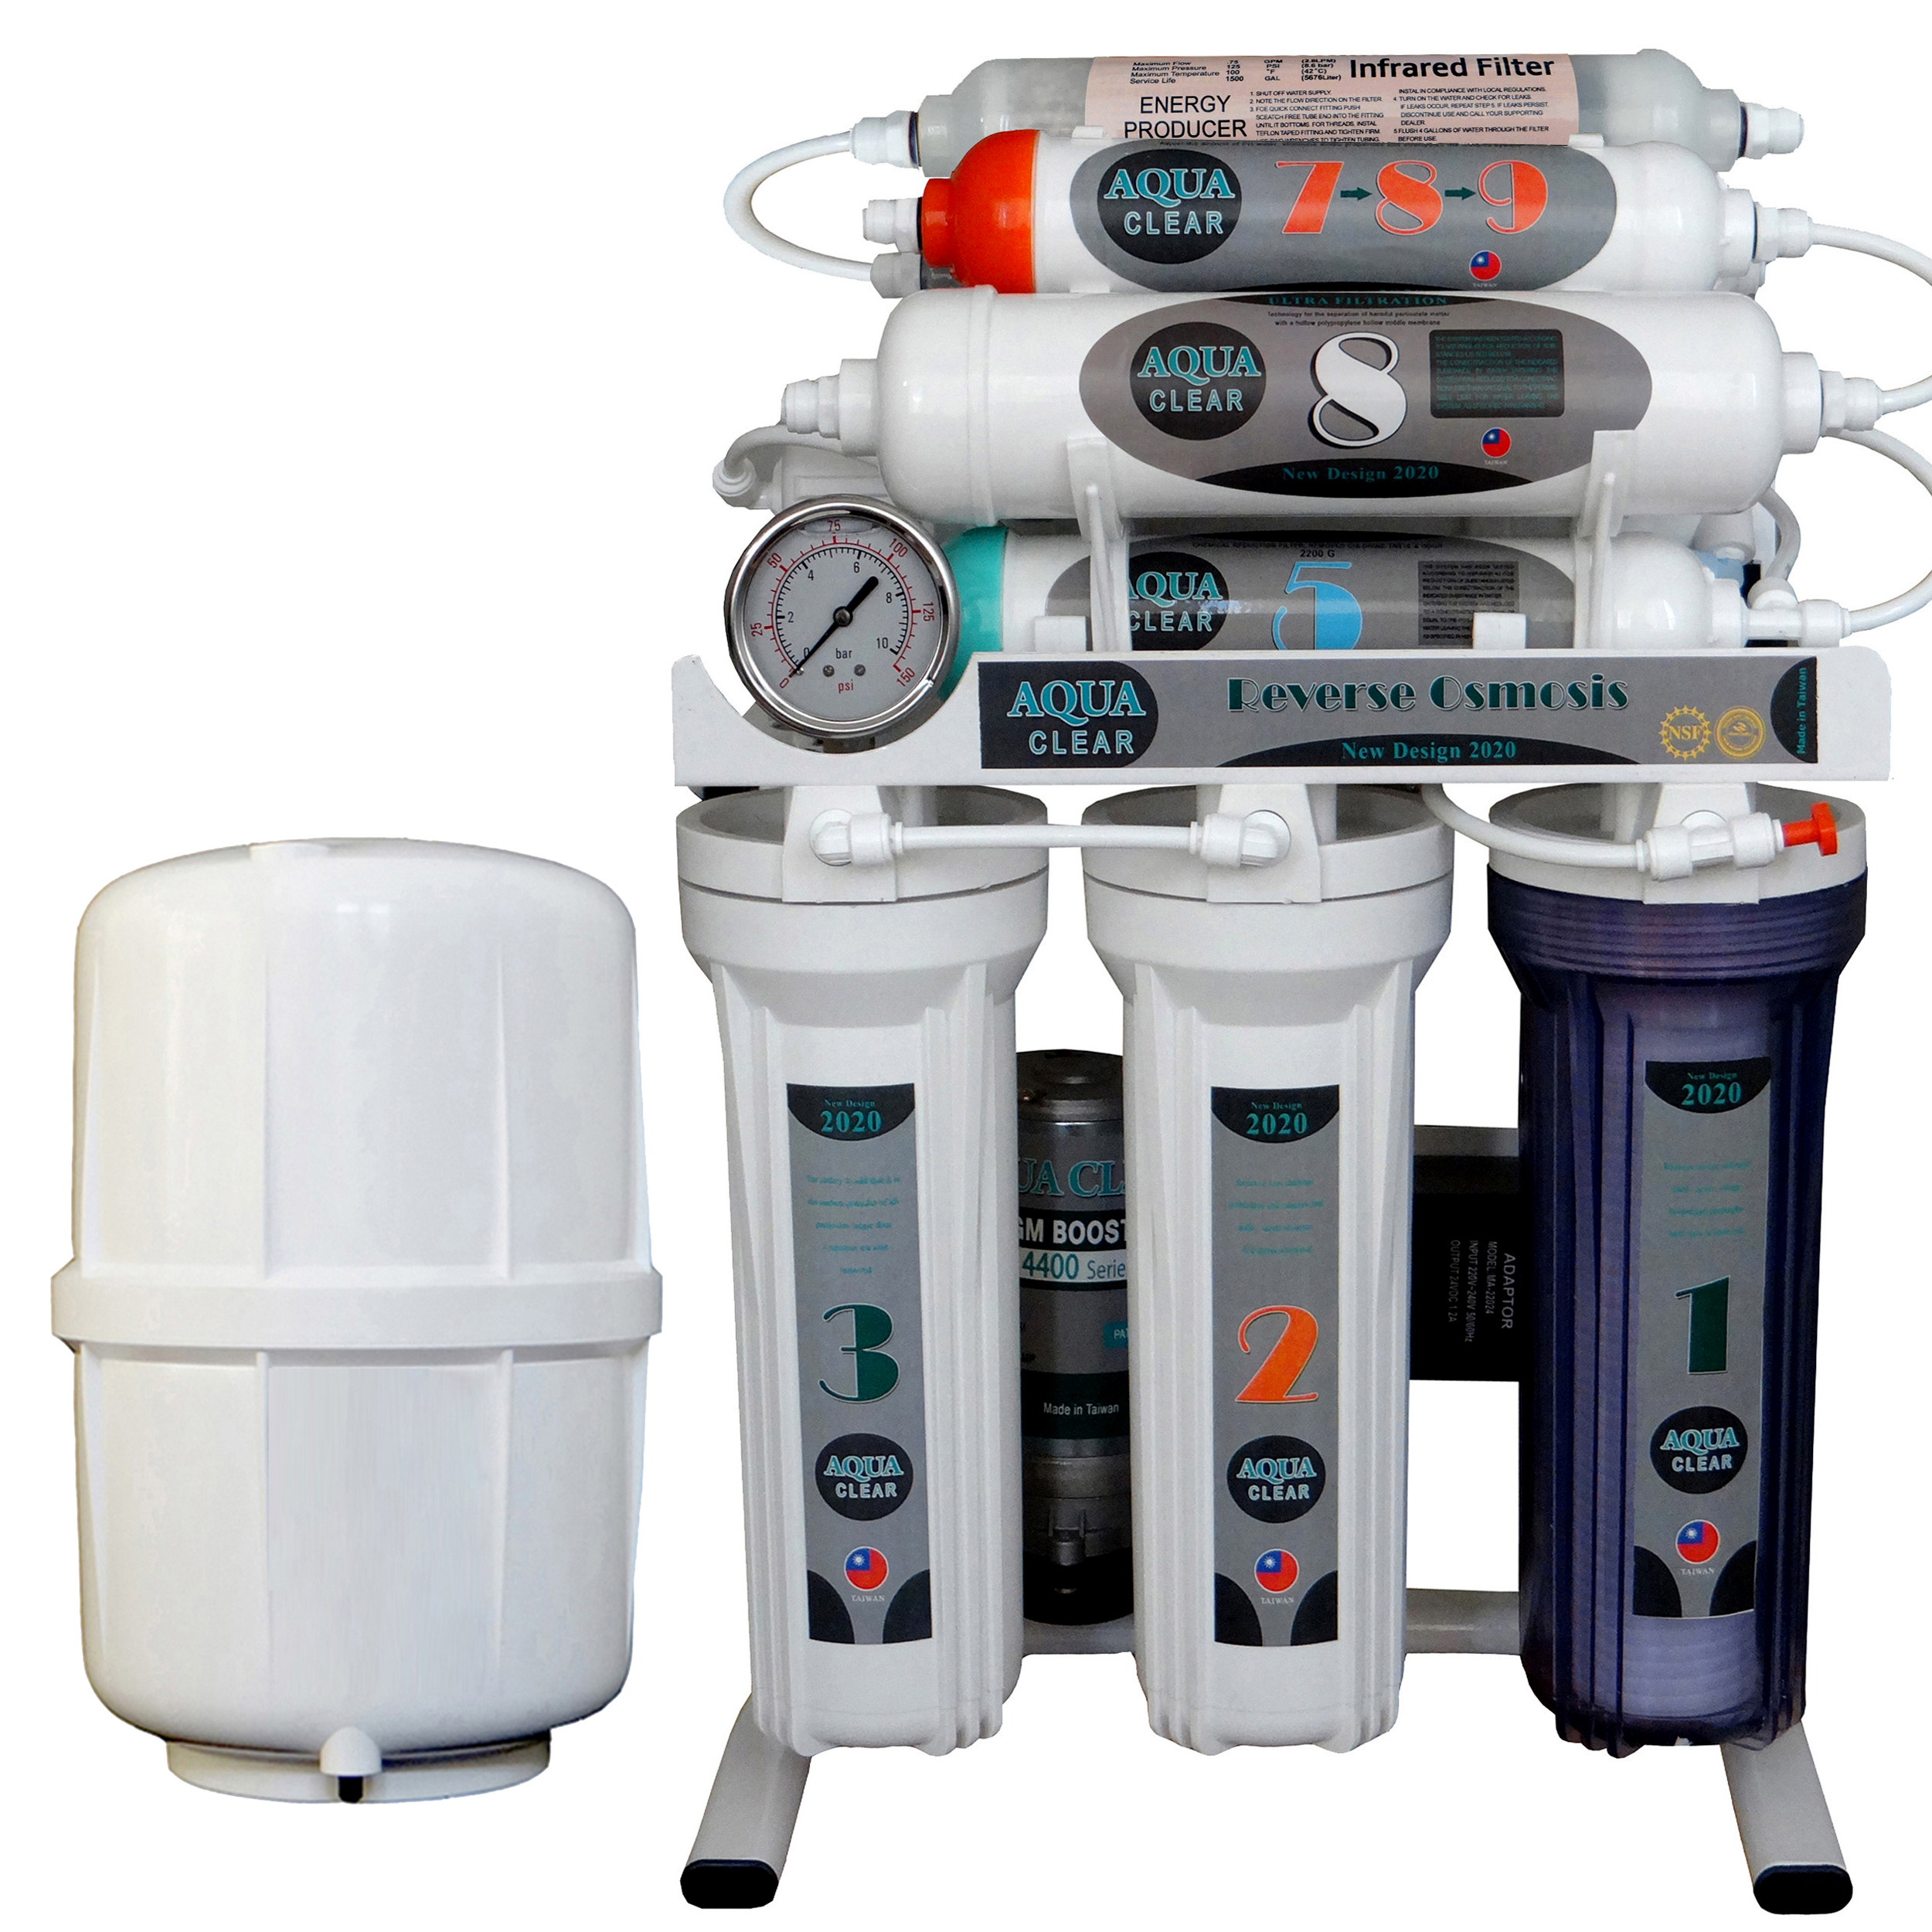 دستگاه تصفیه کننده آب آکوآ کلیر مدل NEW DESIGN2020 - ASF10